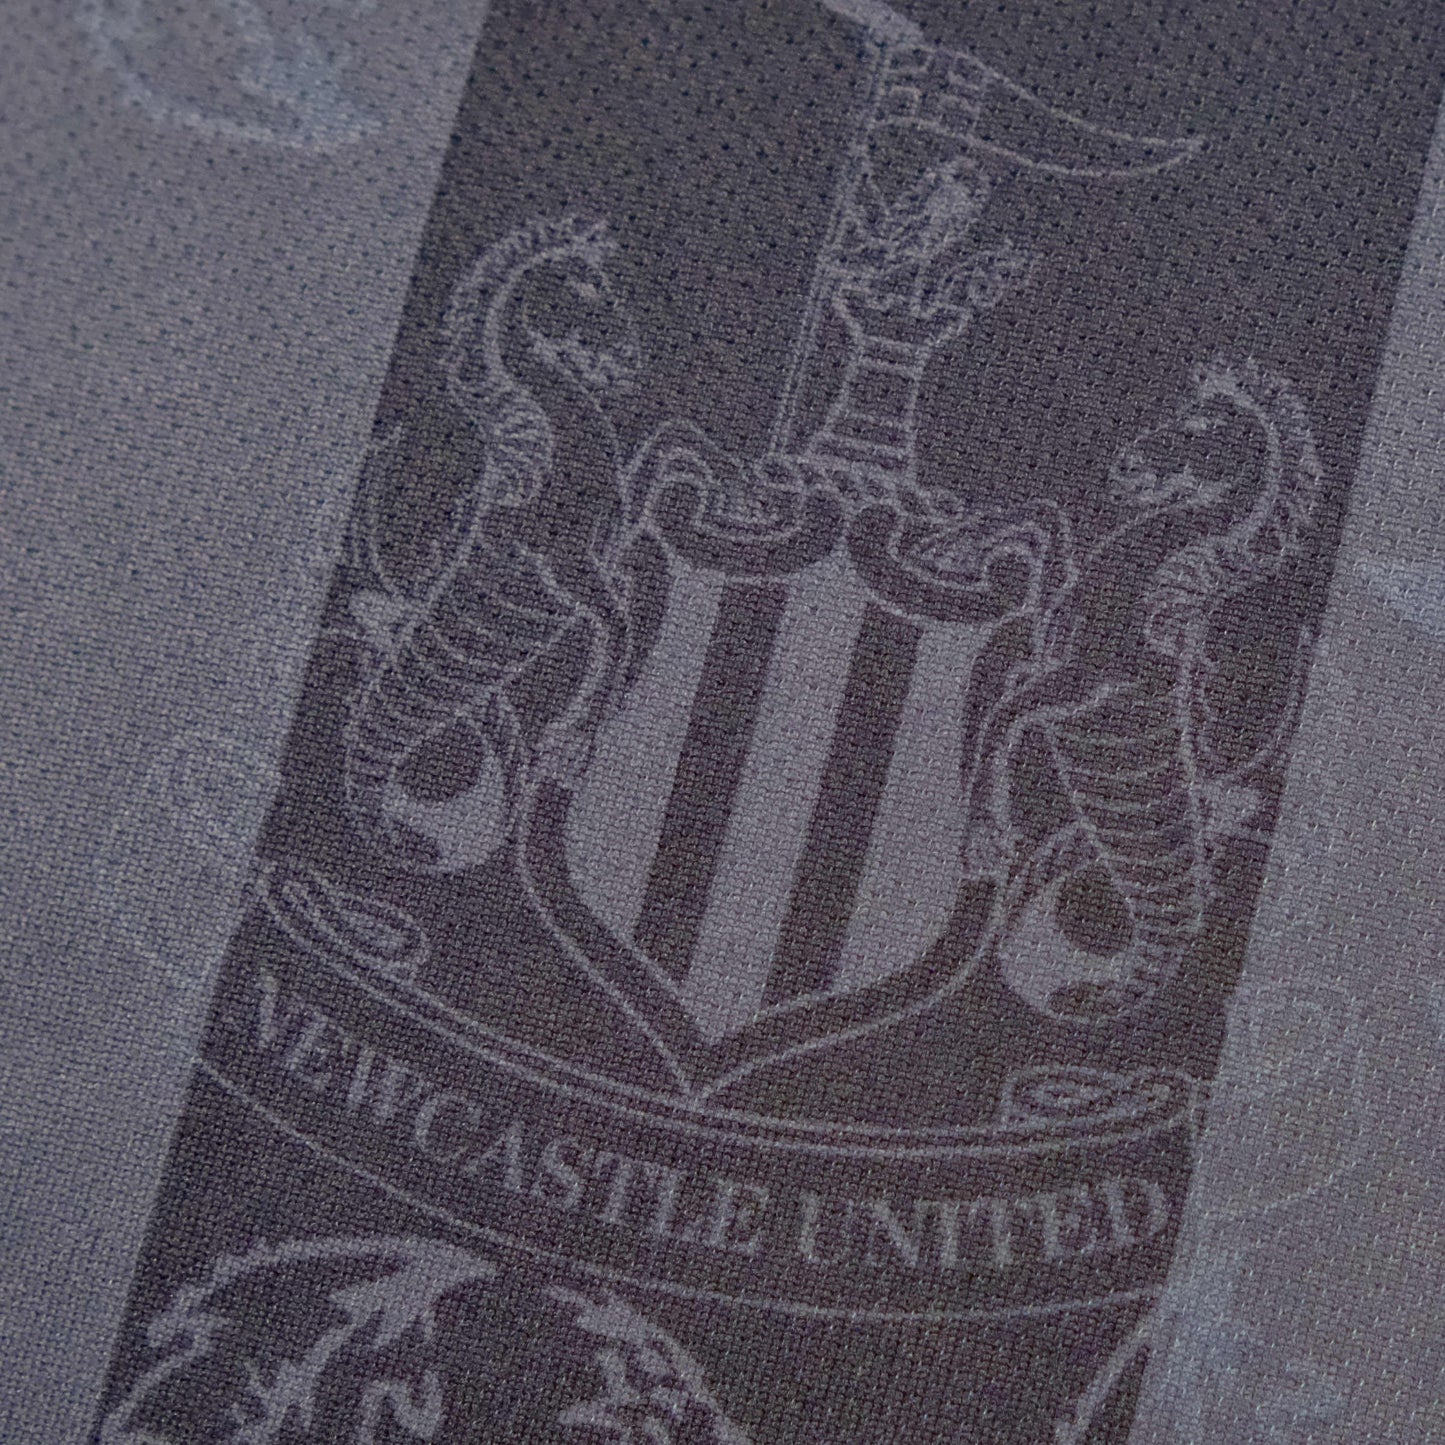 Newcastle United 22-23 Anniversary Shirt